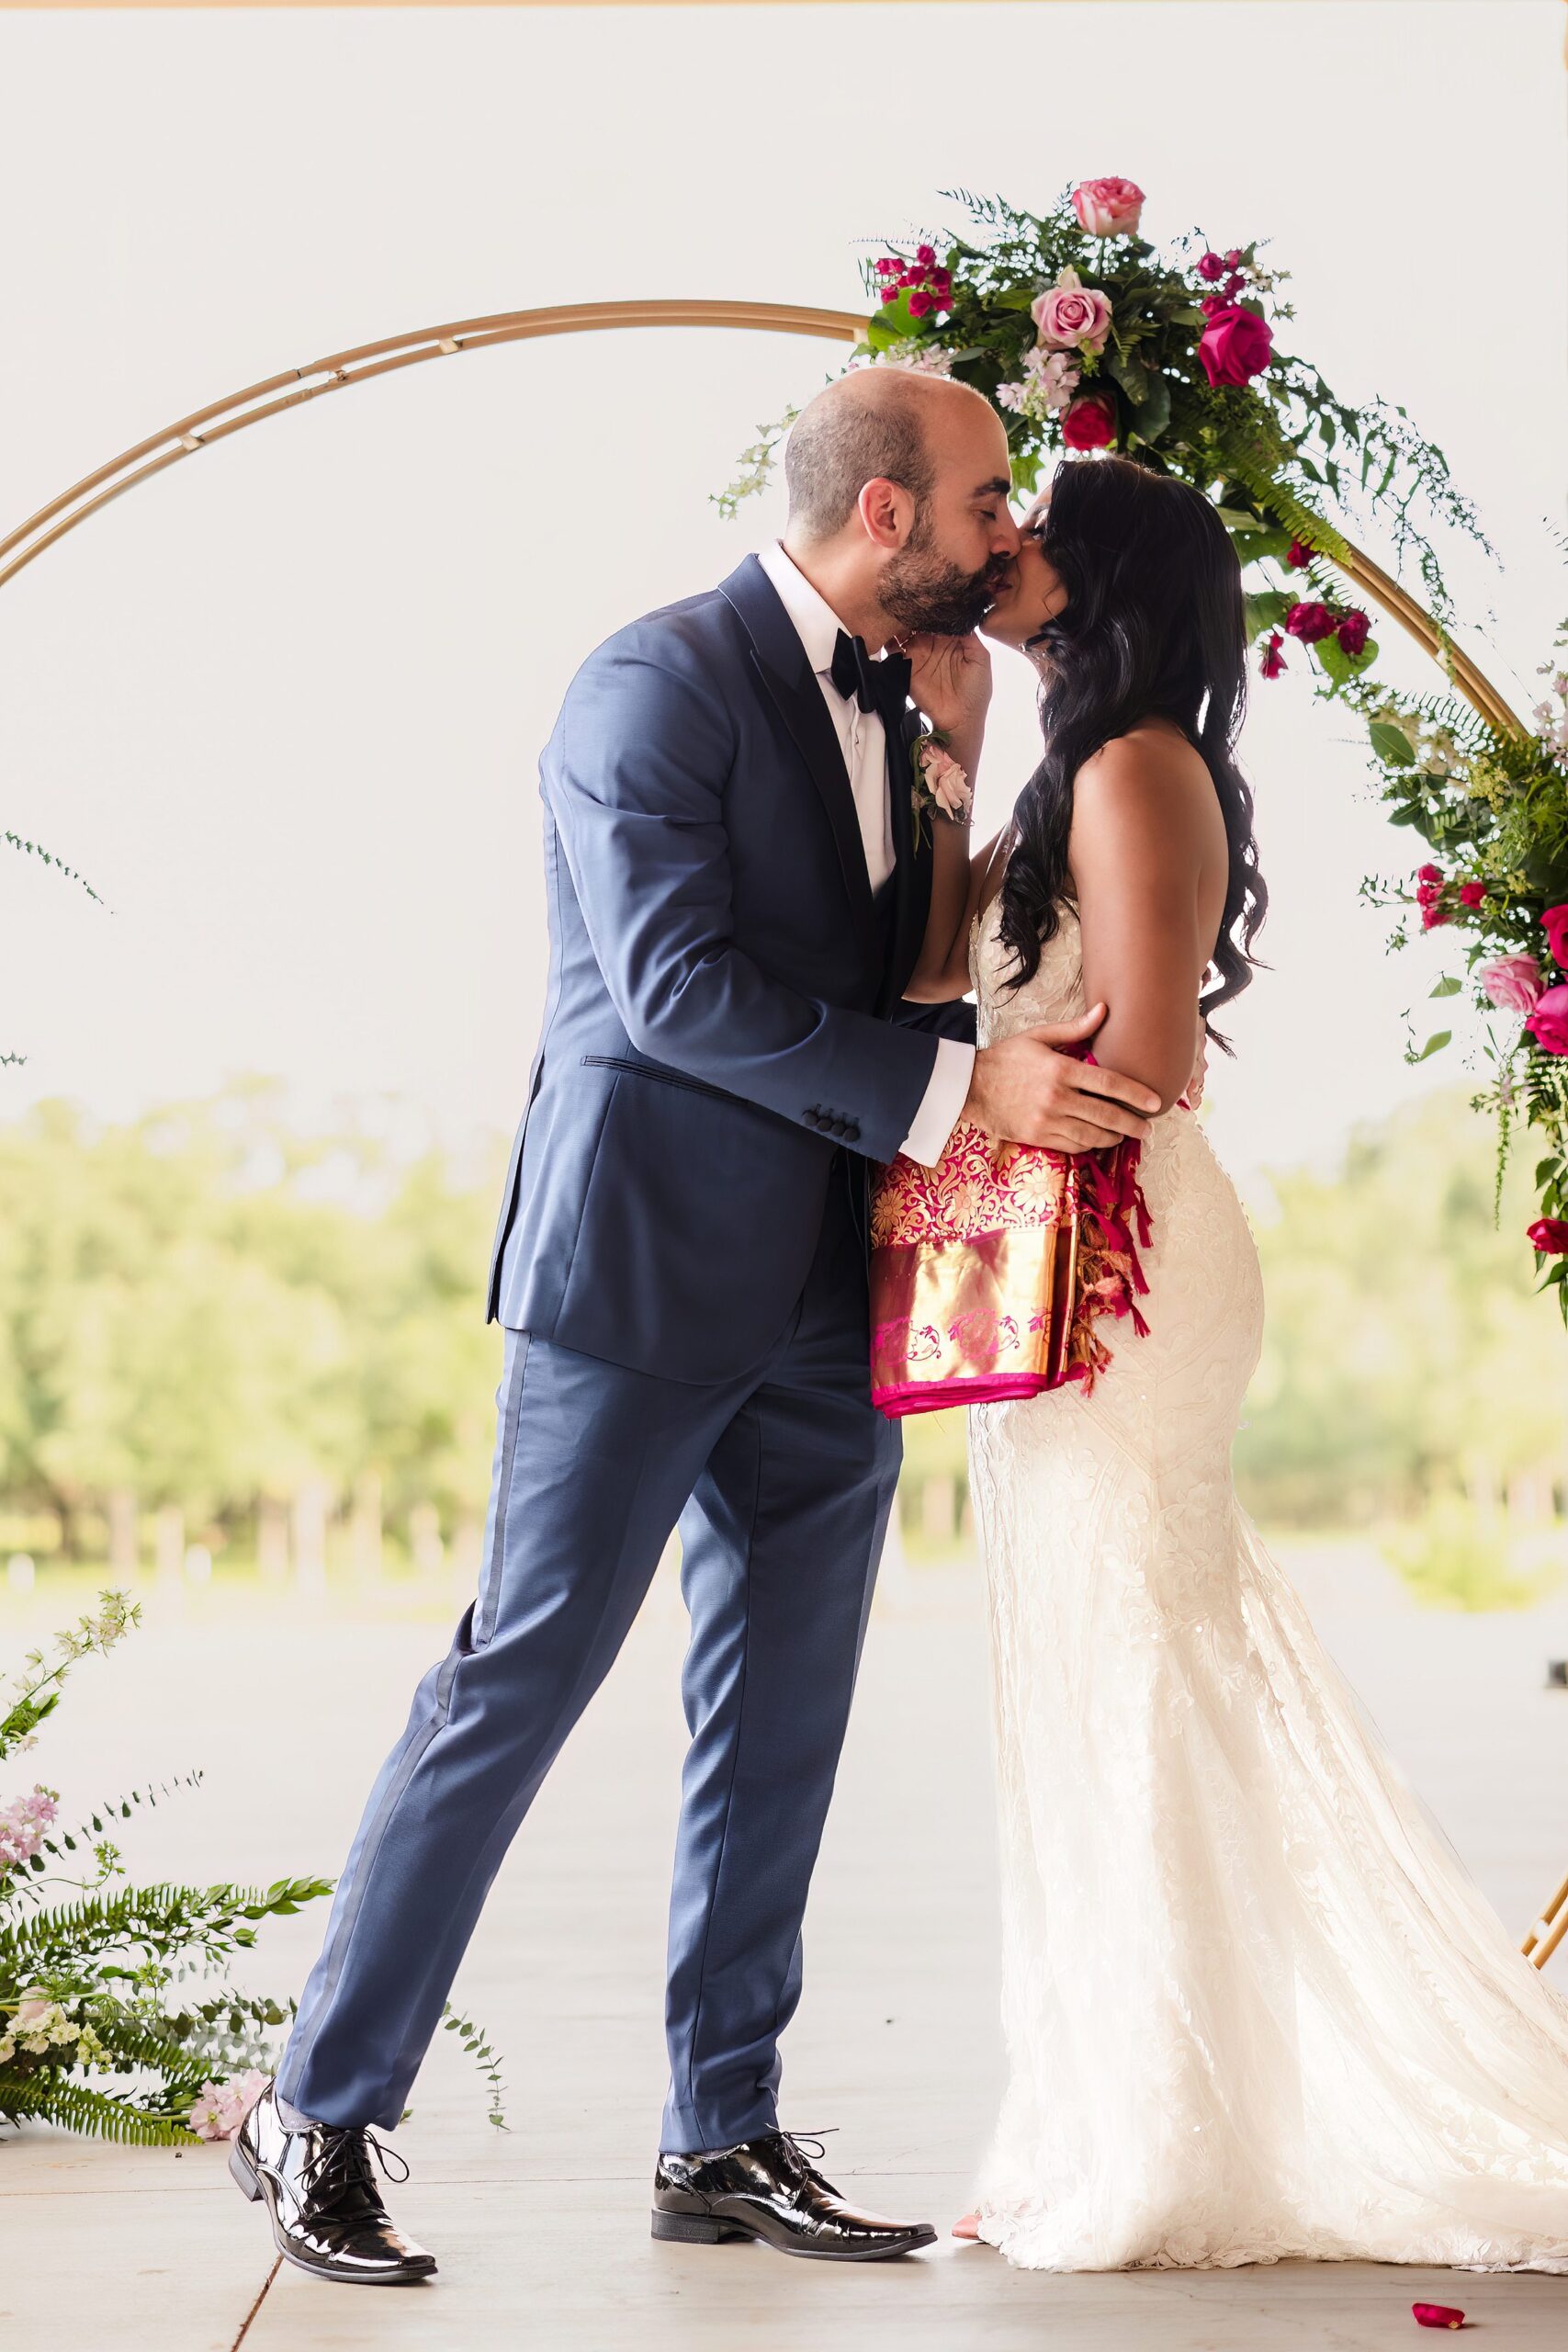 Couple share a first kiss during a wedding at Shiraz Garden in Bastrop, Texas.